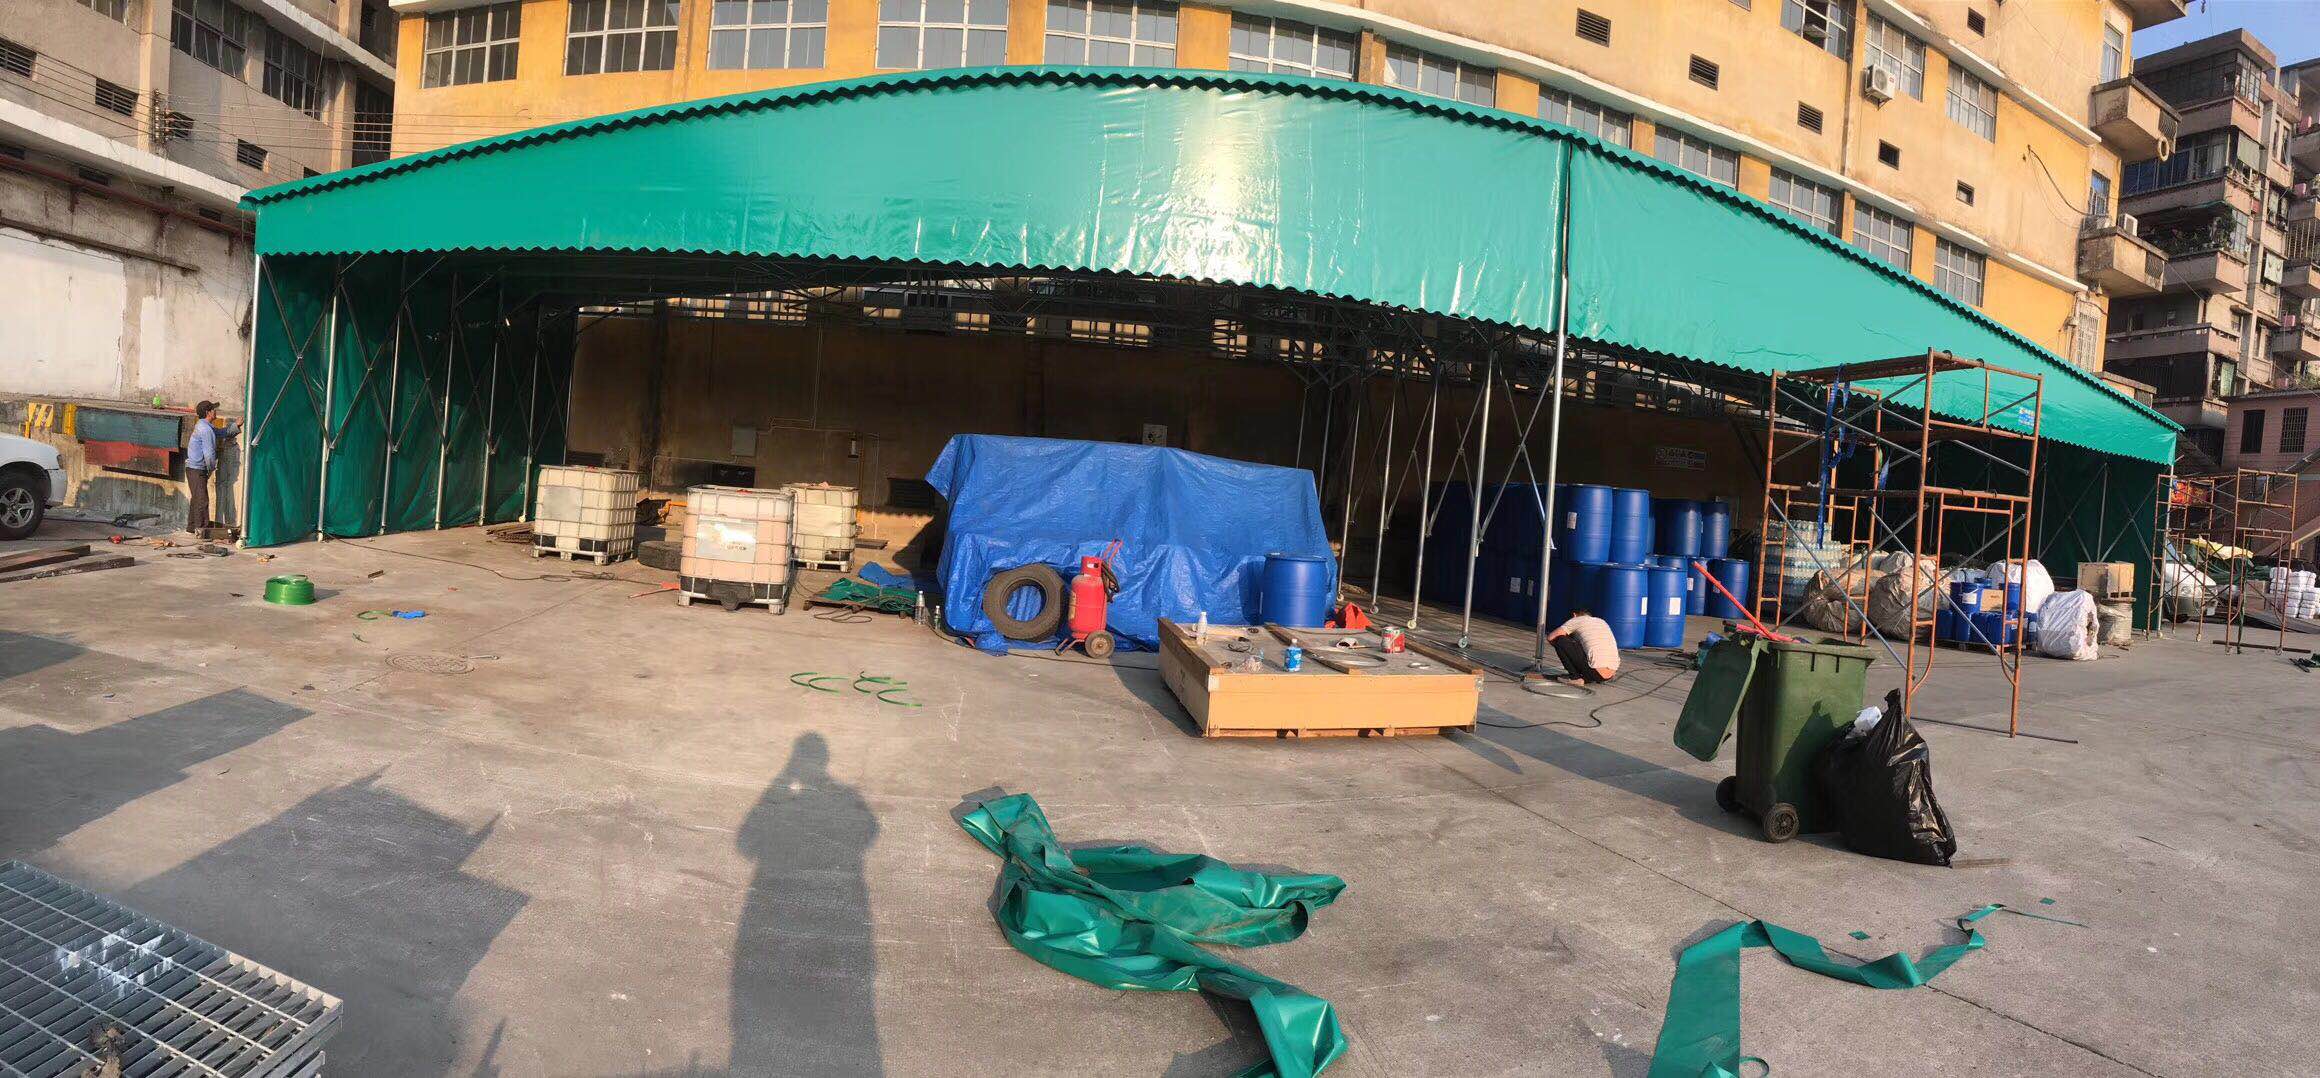 长沙县厂家专业订做大排档雨篷|烧烤帐篷|门口遮雨棚安装